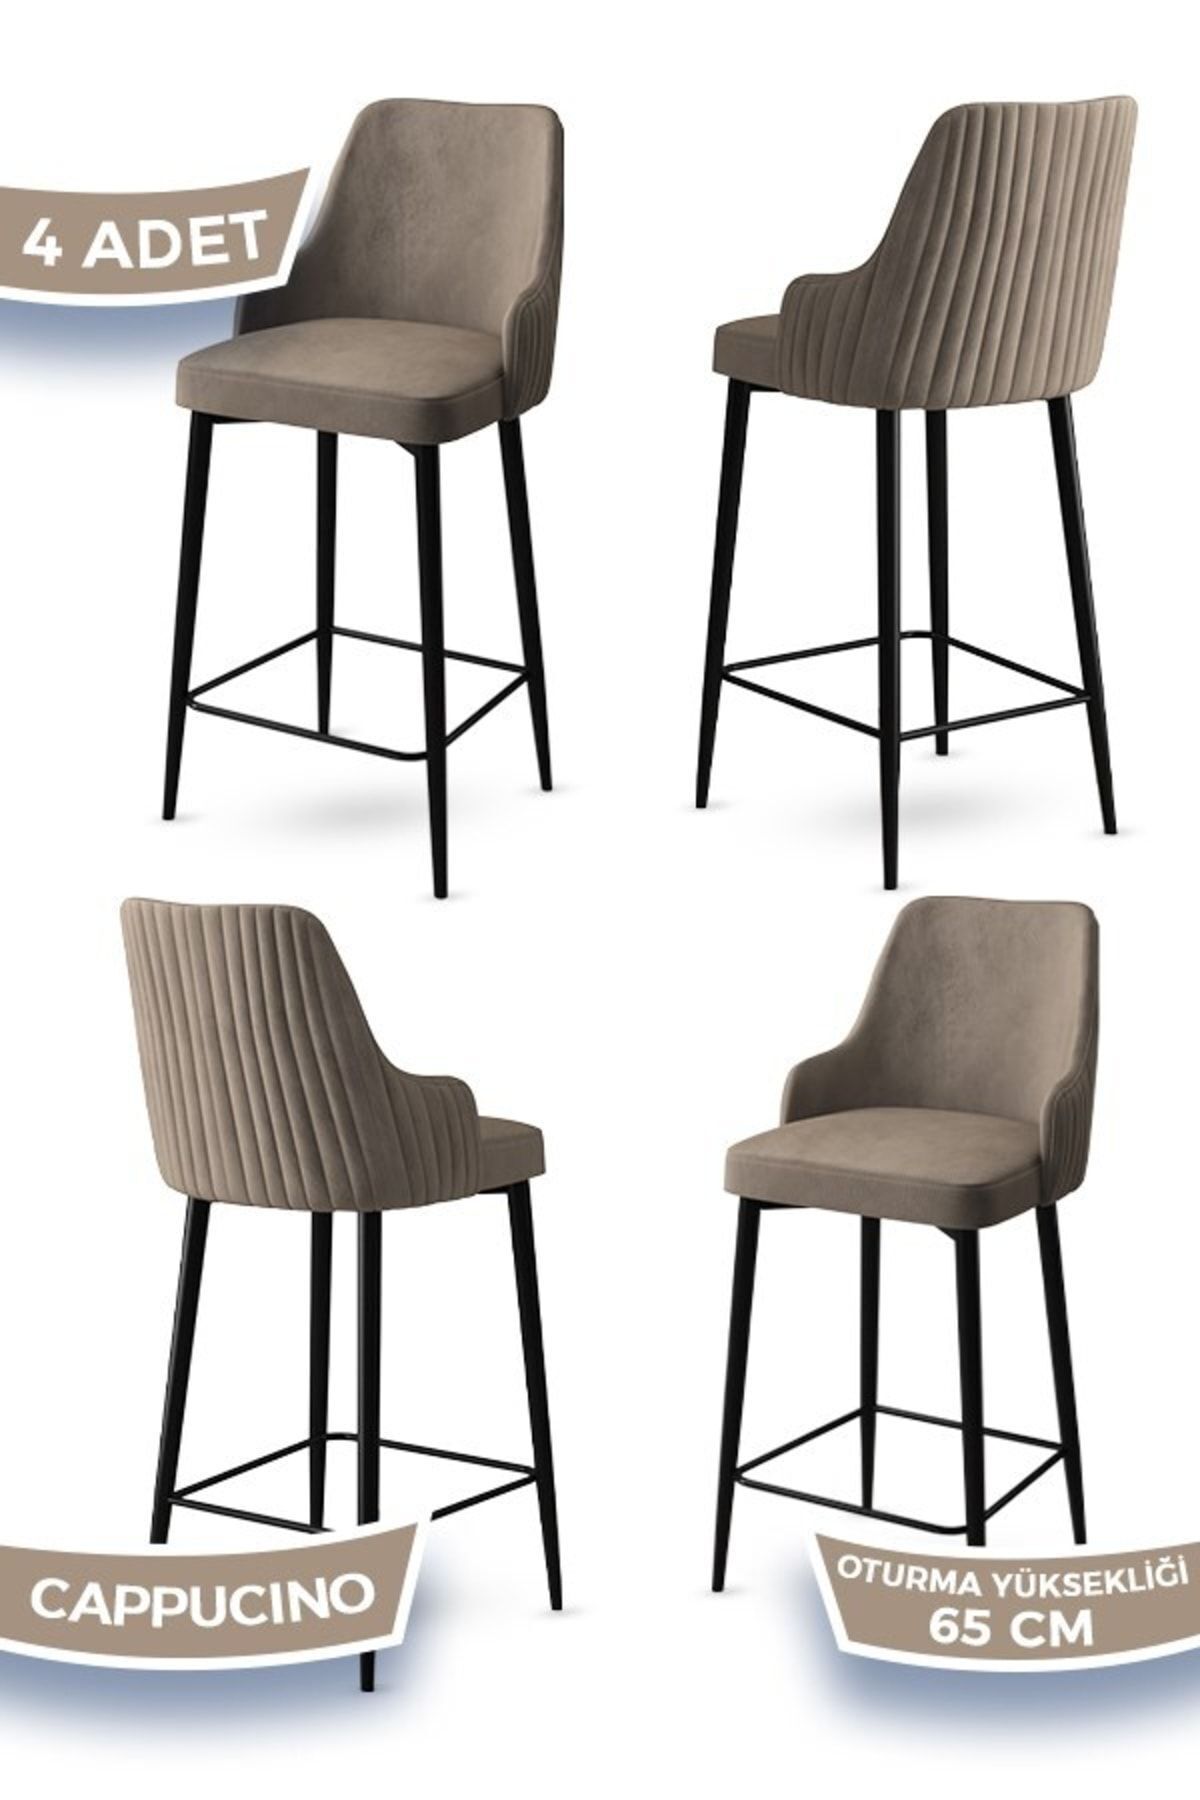 Canisa Tera Serisi 4 Cappucino Sandalye 65 Cm Ada Mutfak Bar Sandalyesi Babyface Kumaş Siyah Metal Ayaklı